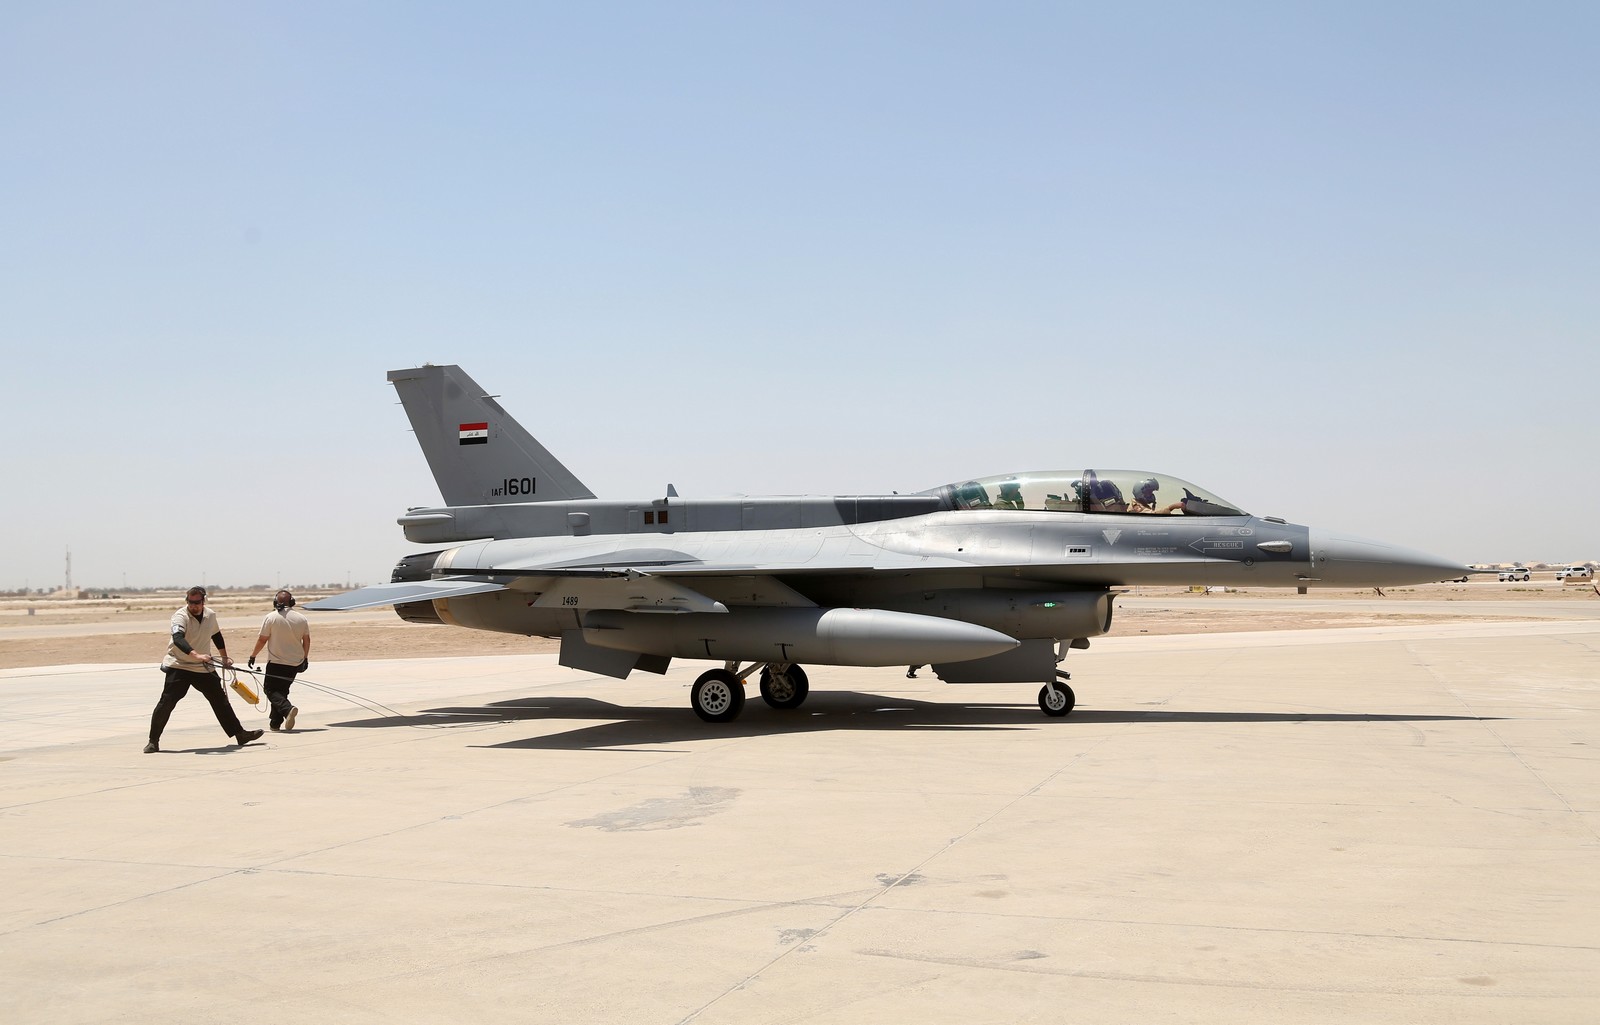 ιράκ: εκτοξεύθηκαν βαλλιστικοί πύραυλοι εναντίον της βάσης αλ άσαντ